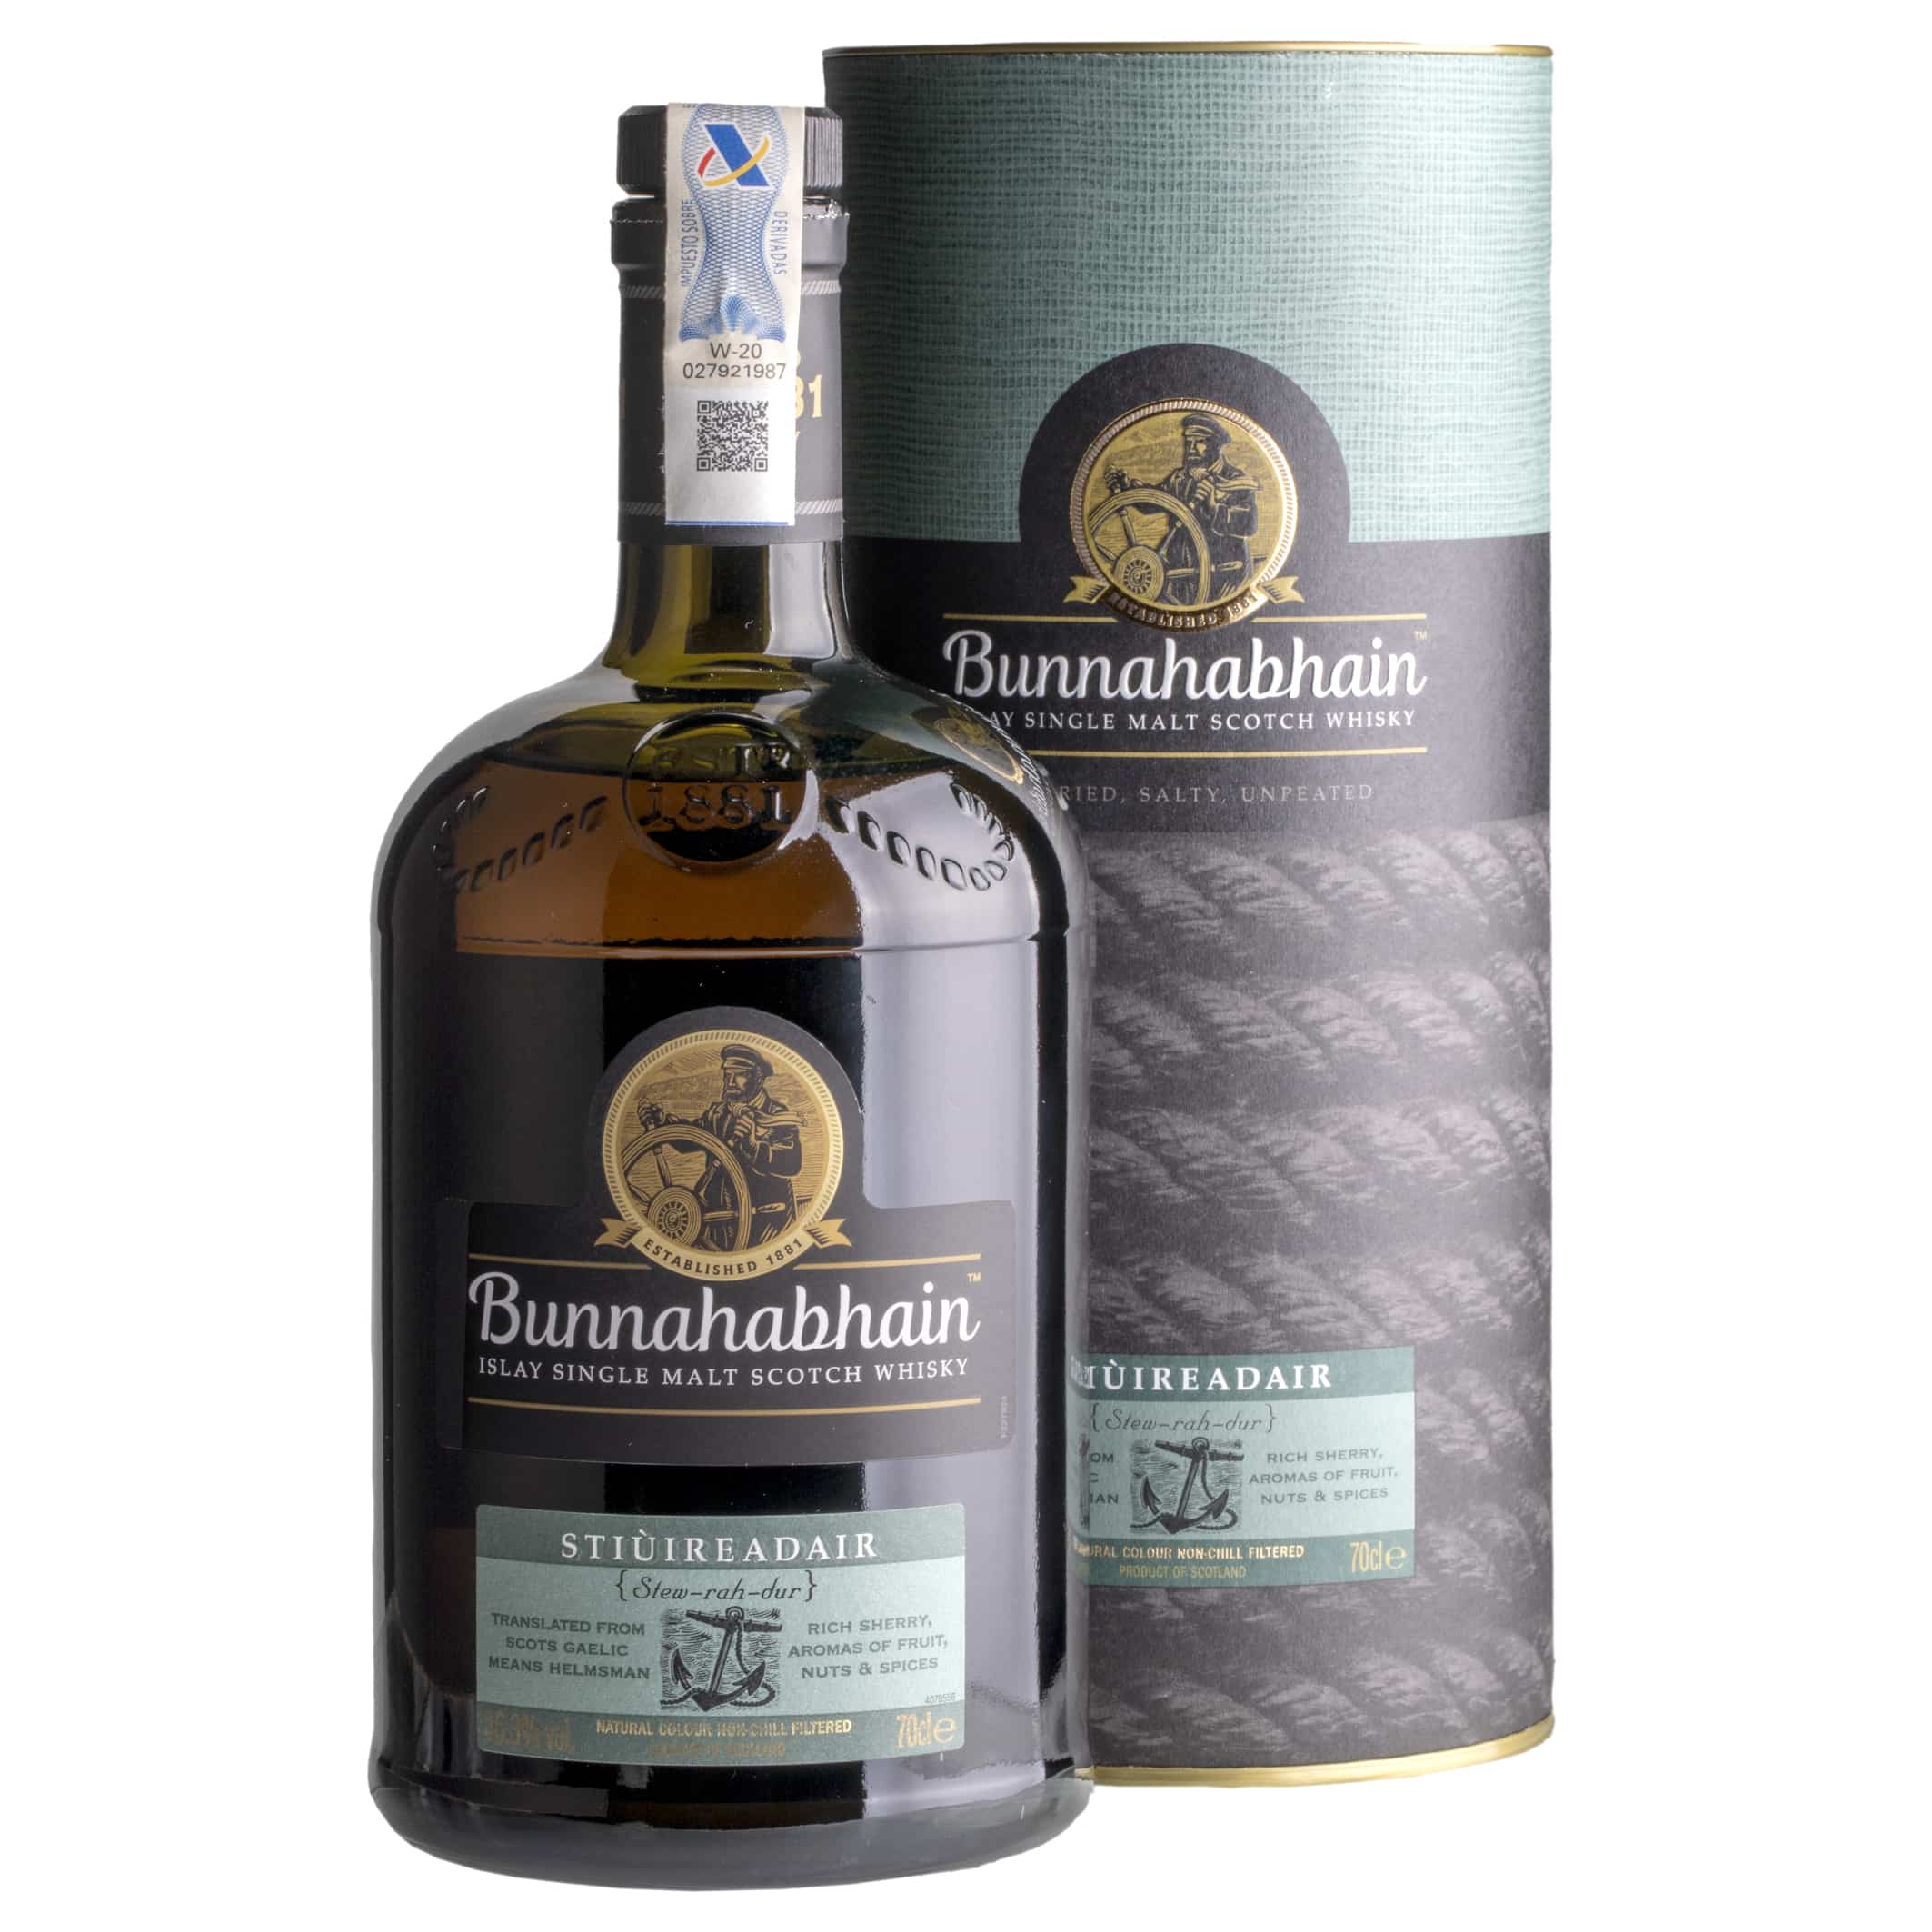 Whisky Bunnahabhain Stiuireadair Islay Single Malt 46.3%